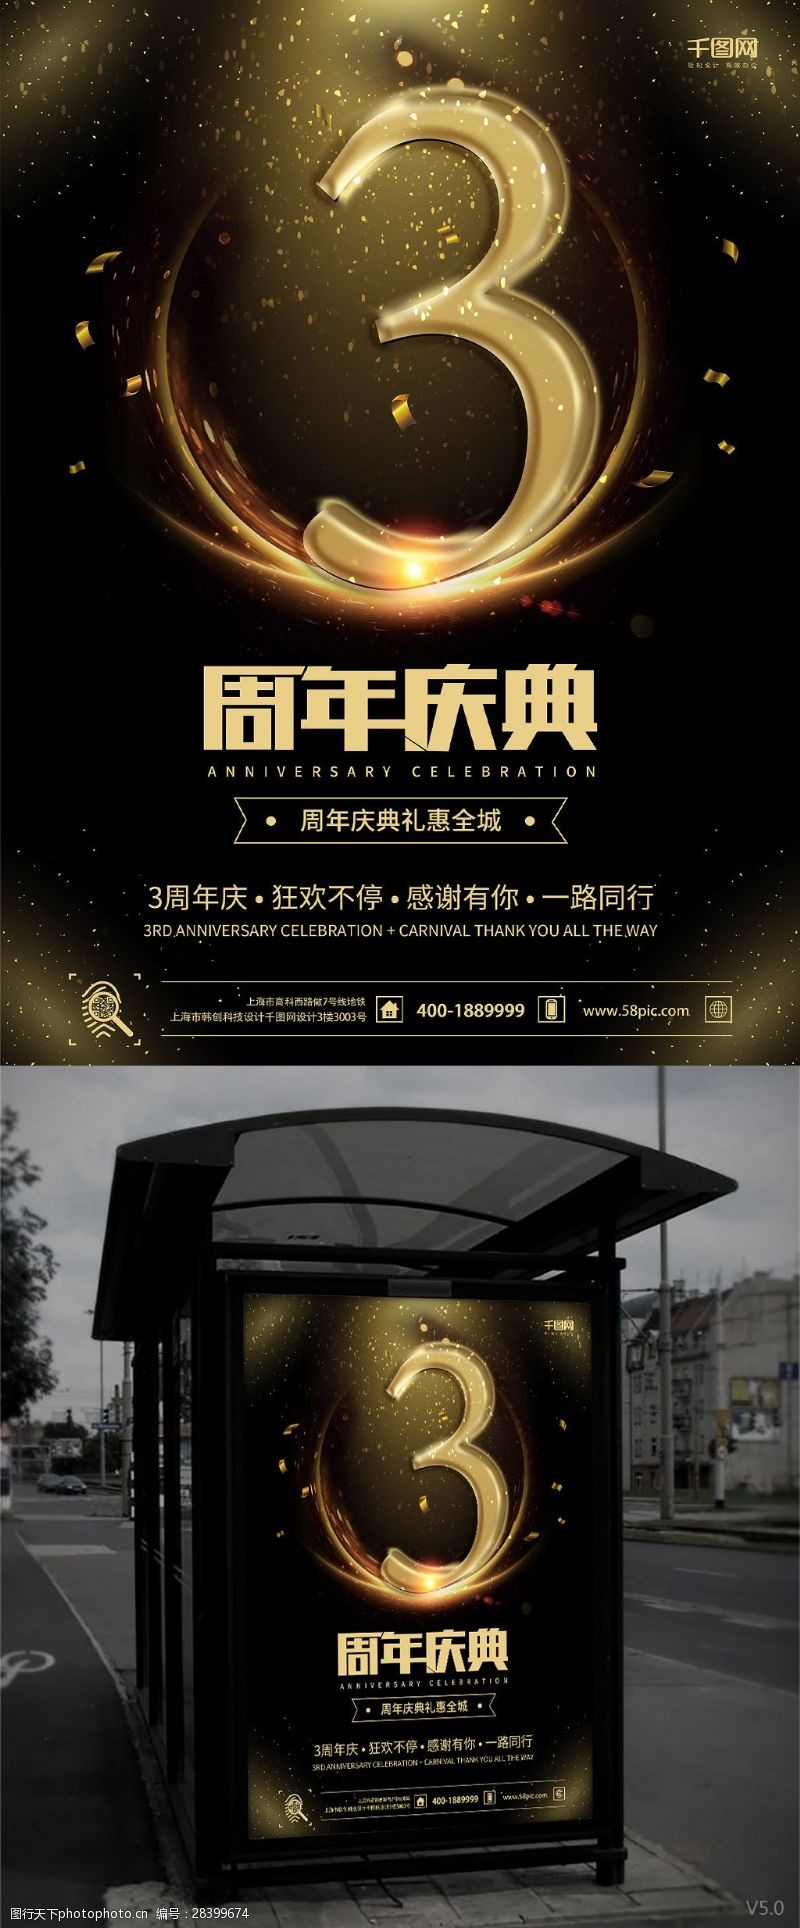 旺铺招租周年庆宣传海报周年庆促销海报3周年